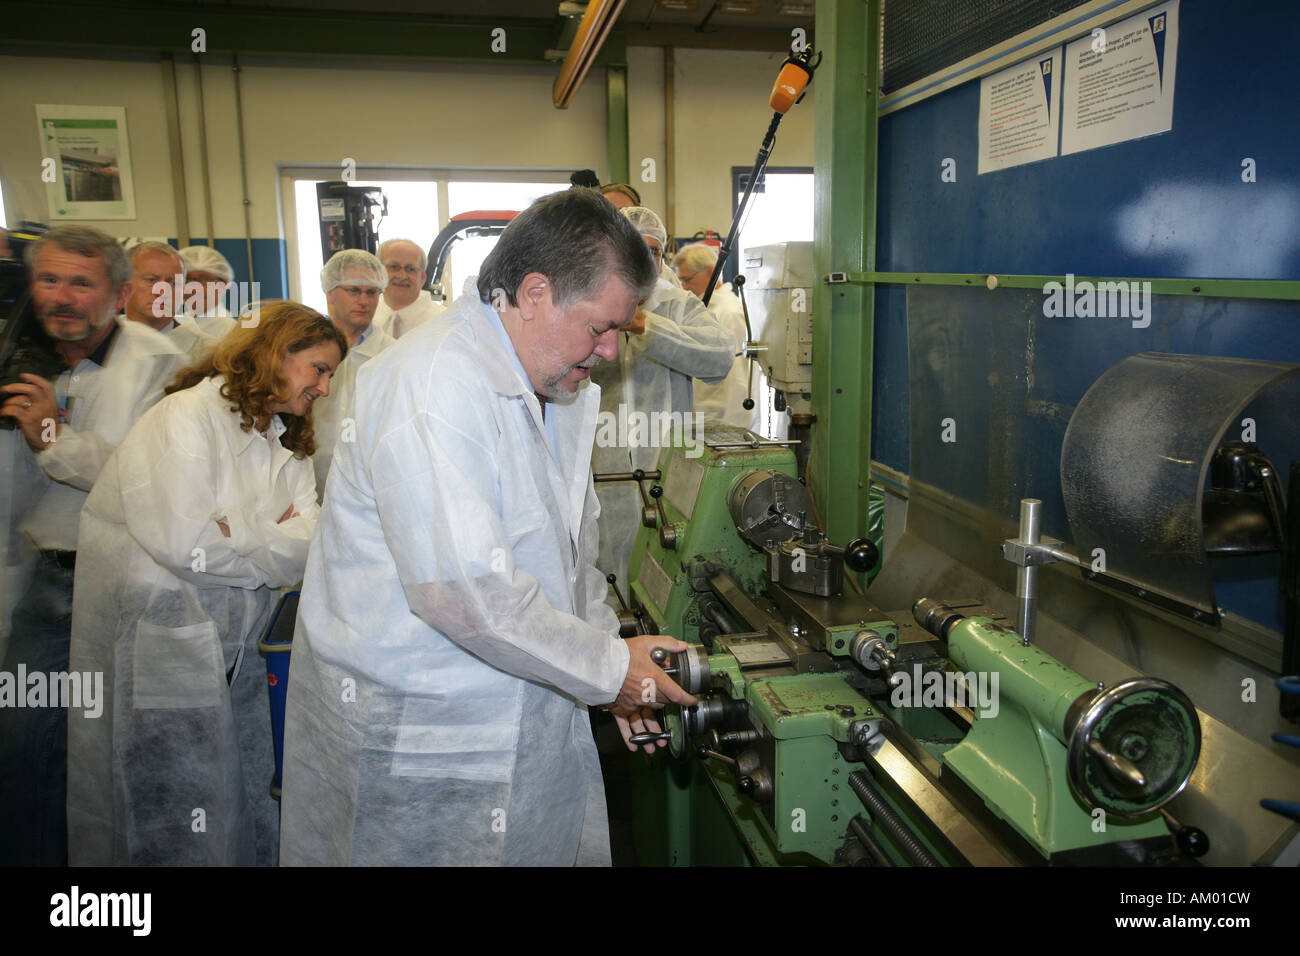 Ministerpräsident von Rheinland-Pfalz Kurt Beck besucht den Verpackung Hersteller Huhtamaki in Alf, Rheinland-Pfalz, Deutschland Stockfoto